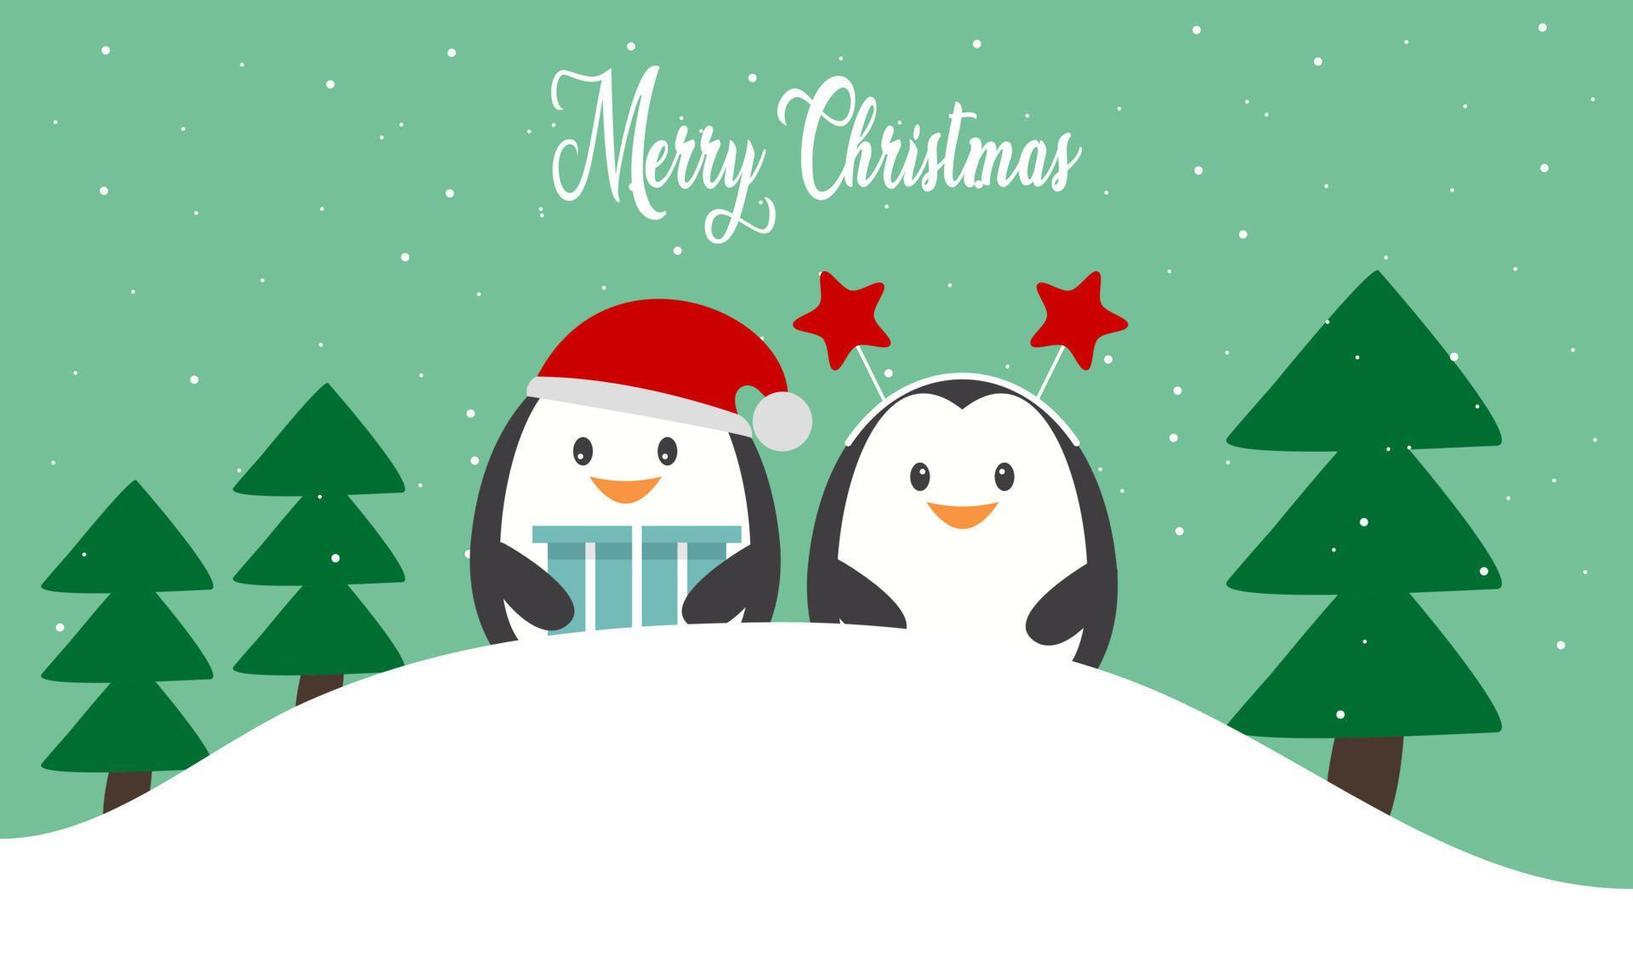 vrolijk Kerstmis kaart met schattig winter pinguïns vector illustratie